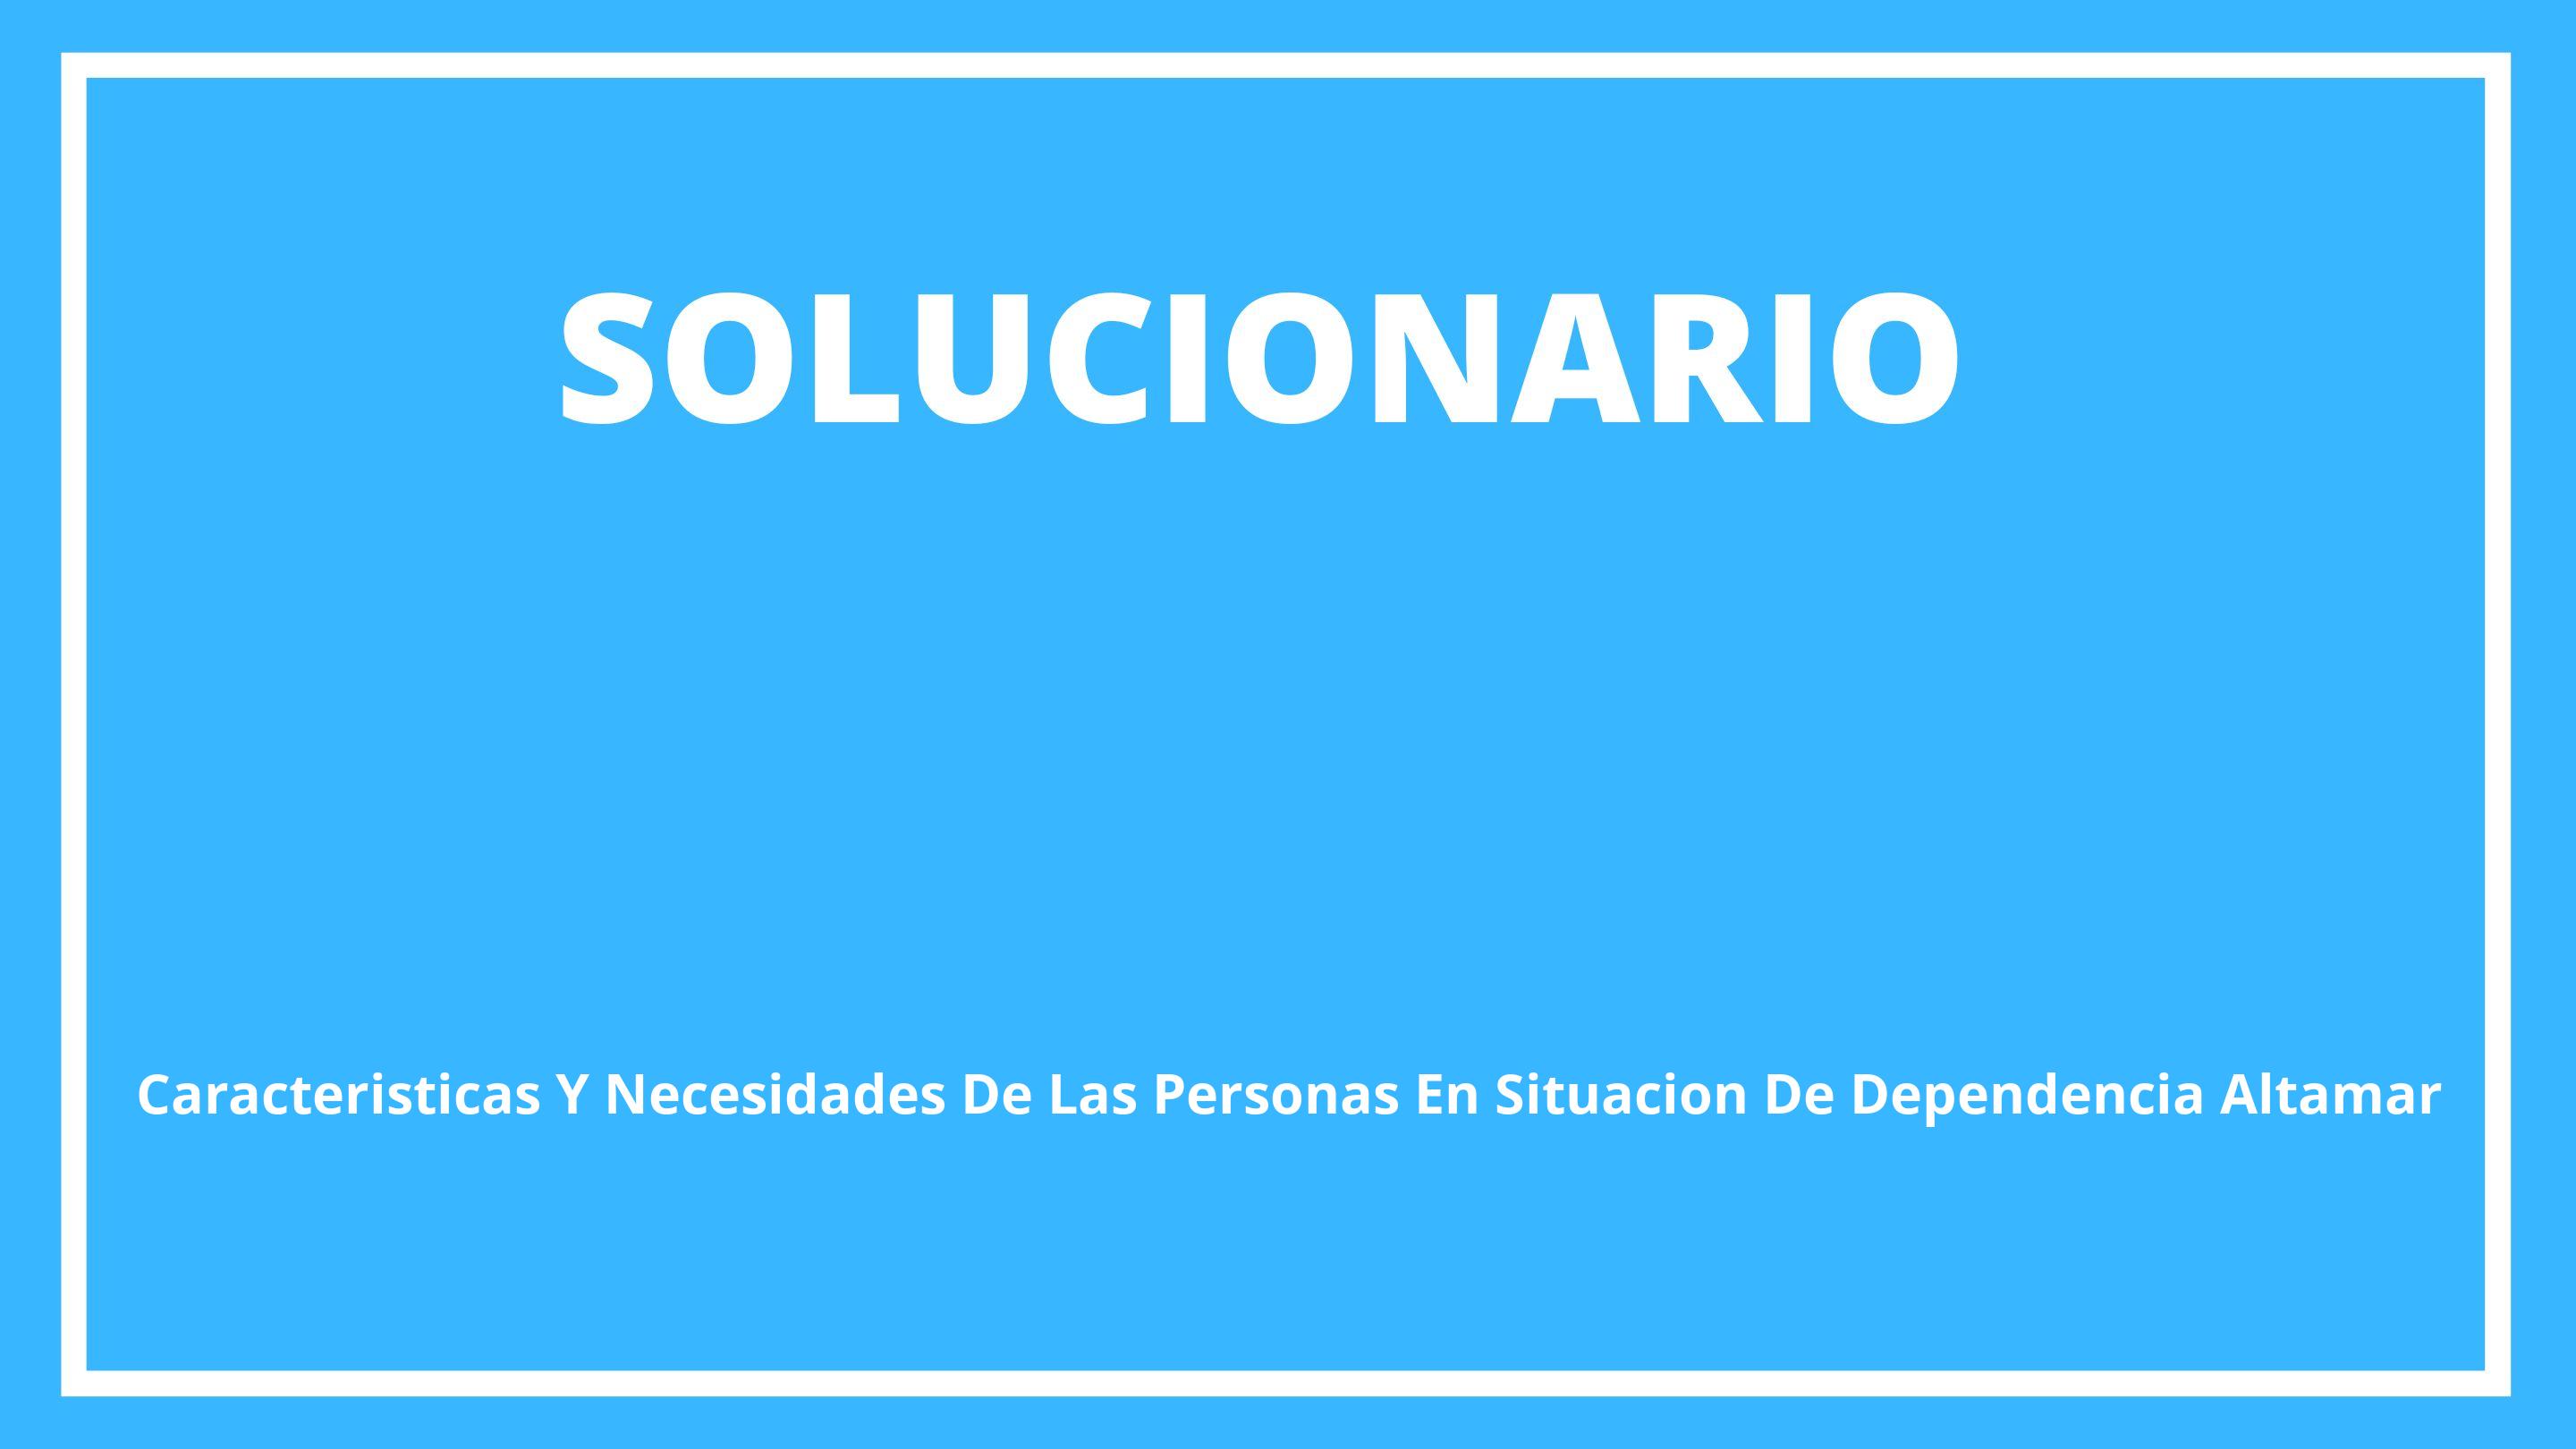 Solucionario Características Y Necesidades De Las Personas En Situación De Dependencia Altamar